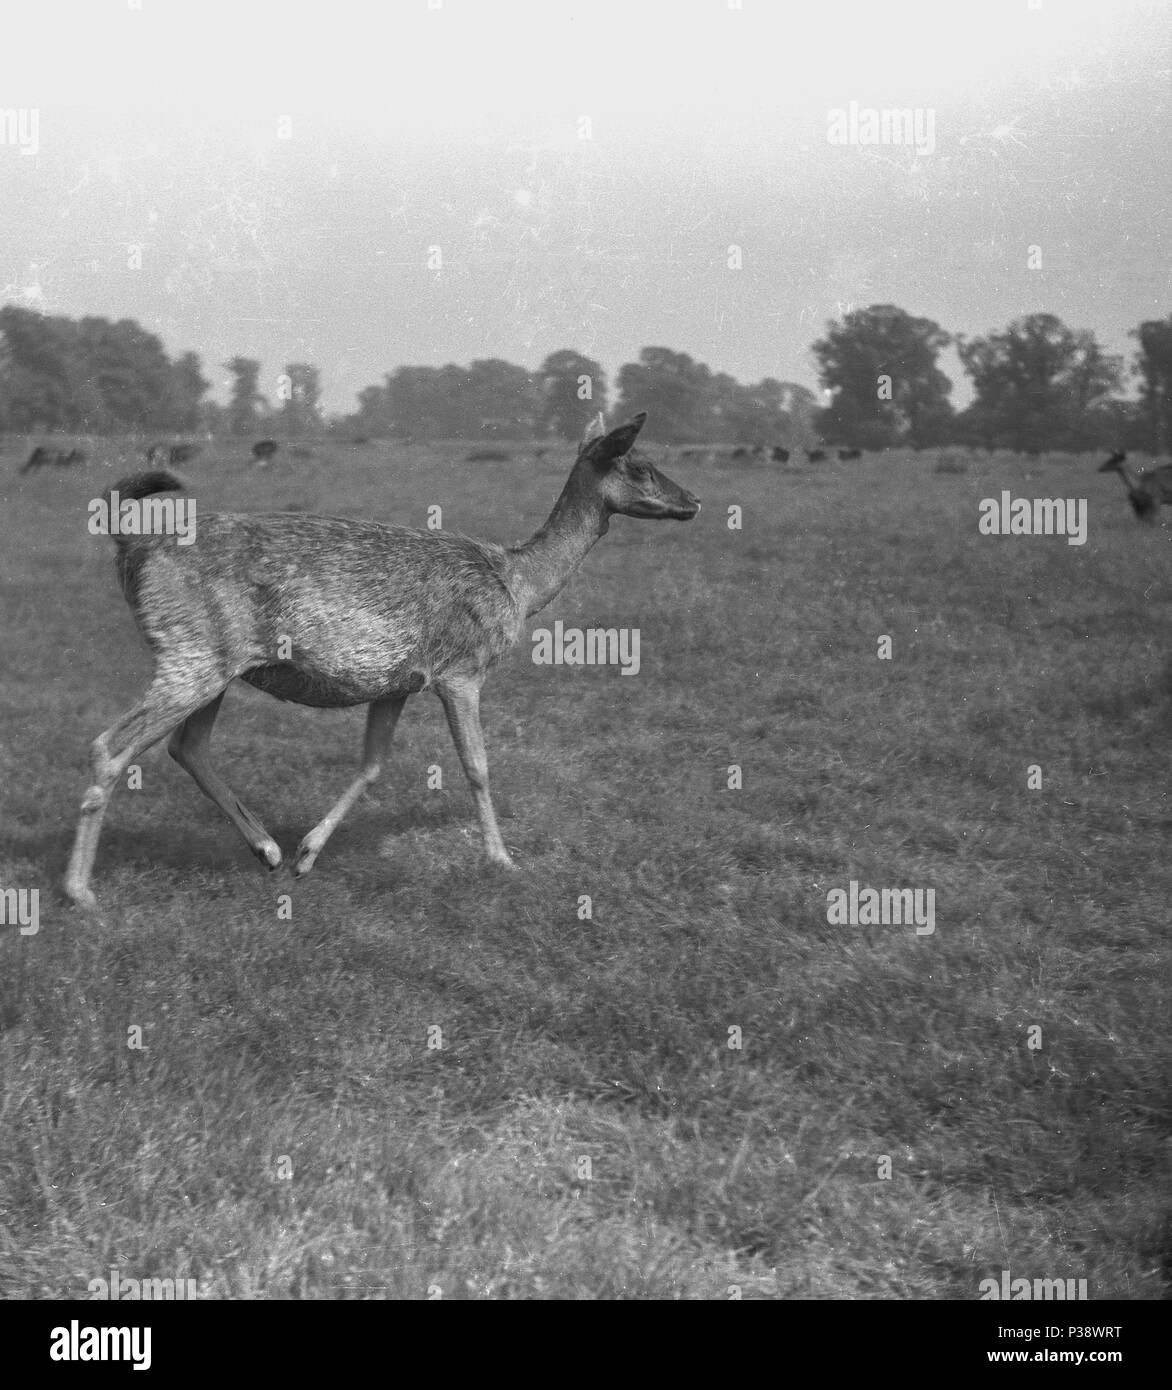 Années 1950, tableau historique de l'ouest un chevreuil (femelle) à l'extérieur dans un parc herbeux, England, UK. Animaux gracieux, rapide, qui iive en bois, les herbes sont une partie importante de leur régime alimentaire, Banque D'Images